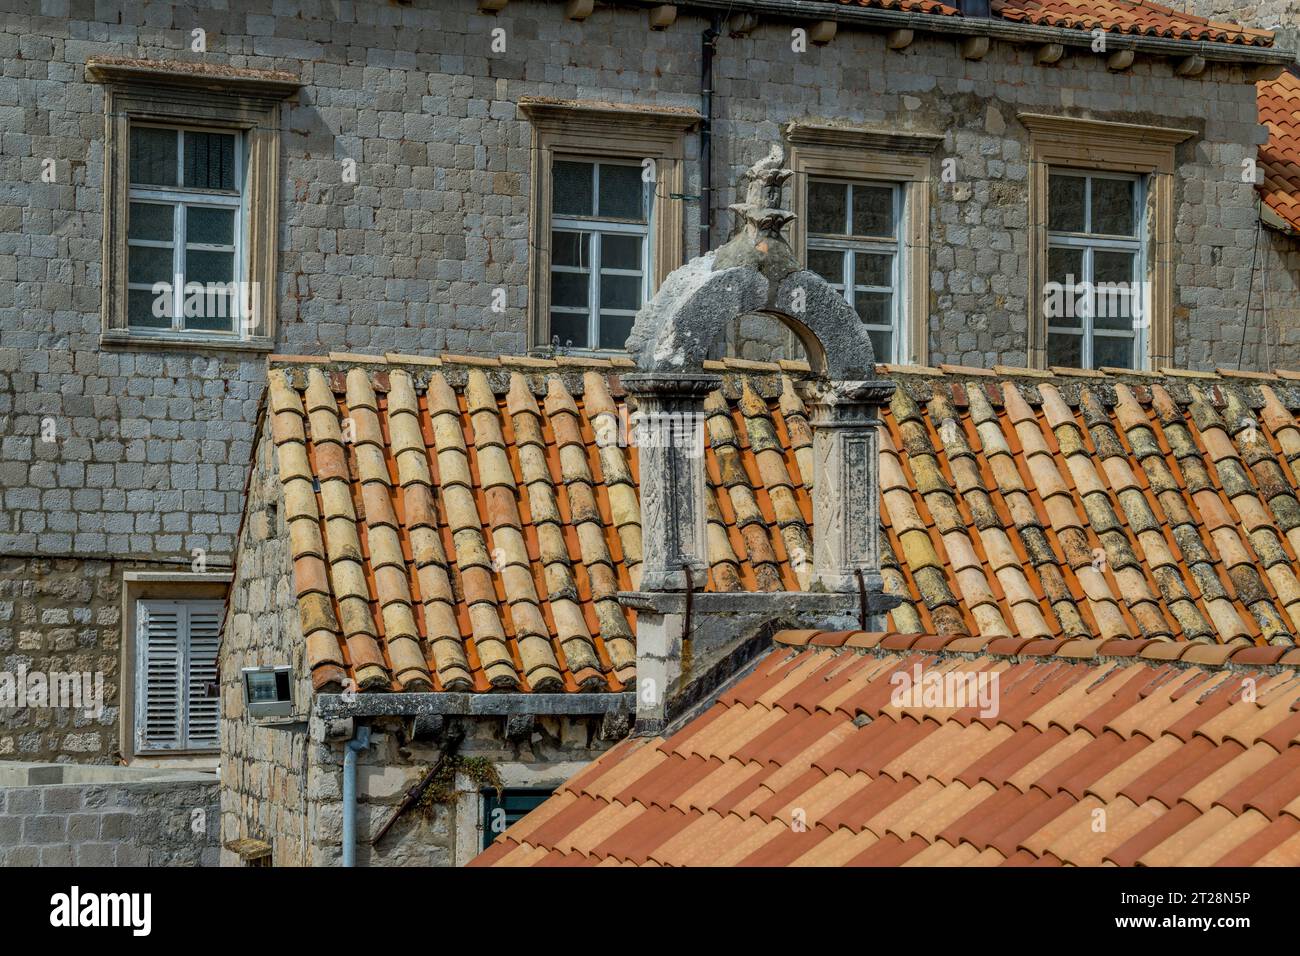 Vue depuis le mur de la ville promenade des toits de tuiles et un vieux clocher dans la vieille ville de Dubrovnik dans le sud de la Croatie. Banque D'Images